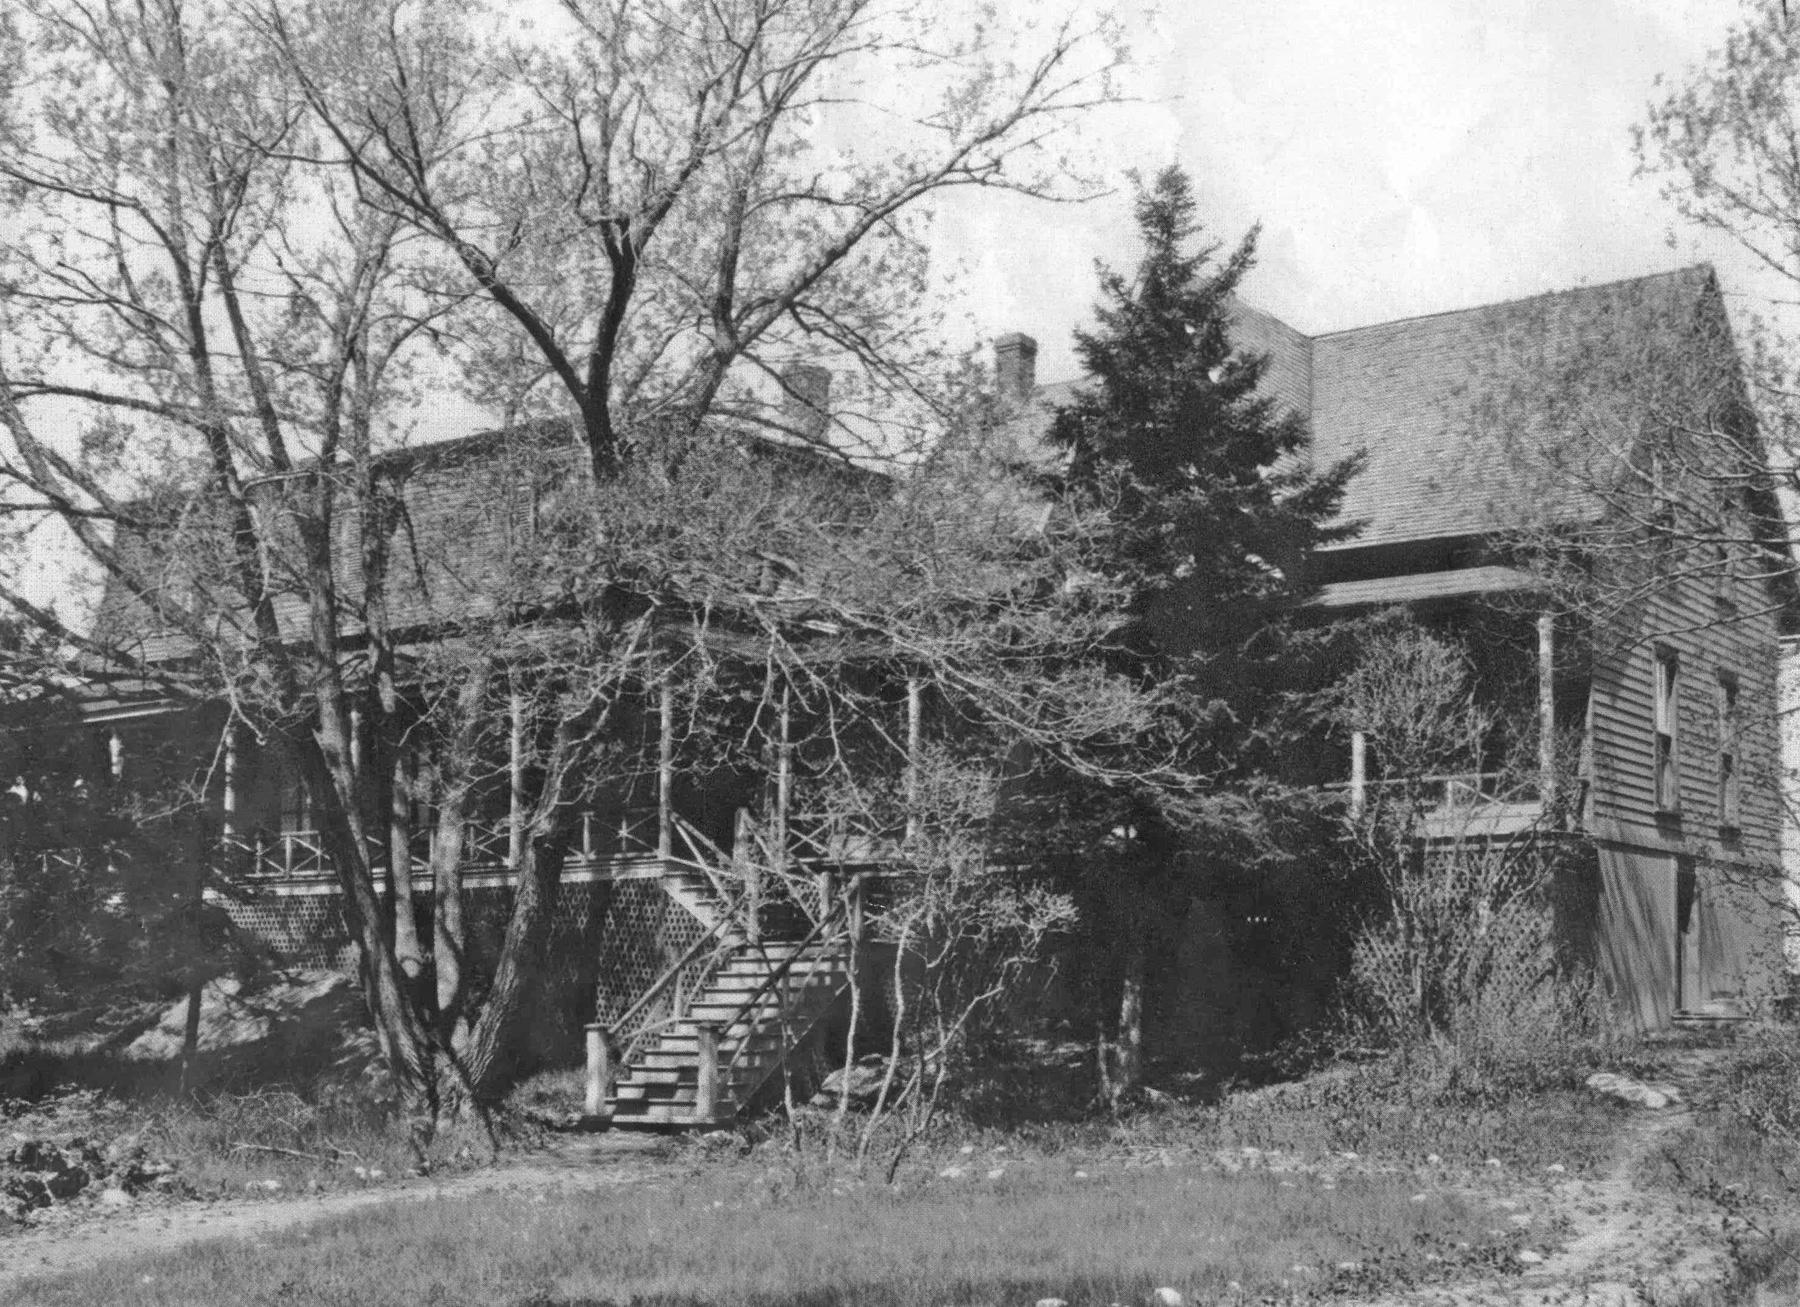 Photographie noir et blanc d'une grande maison (villa Les Rochers) dotée d'une large véranda avec escalier à l’avant, devant laquelle se dressent un arbre à feuillage caduque ainsi qu’un imposant conifère. 